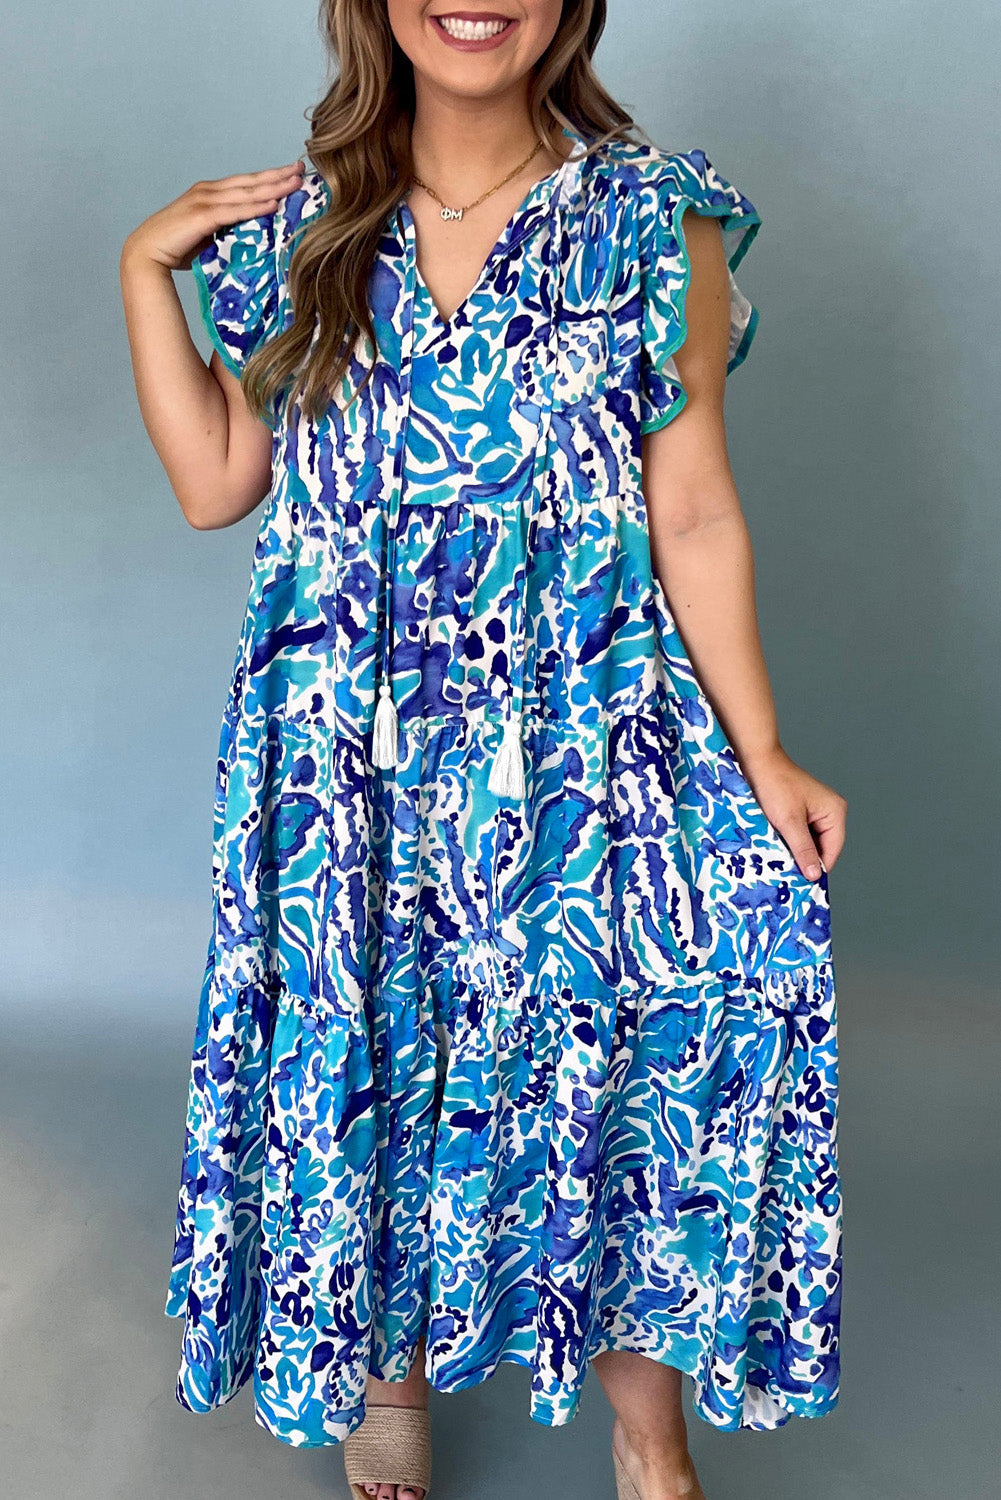 Himmelblaues, gestuftes langes Kleid mit abstraktem Aufdruck, geteiltem Ausschnitt, Rüschenärmeln